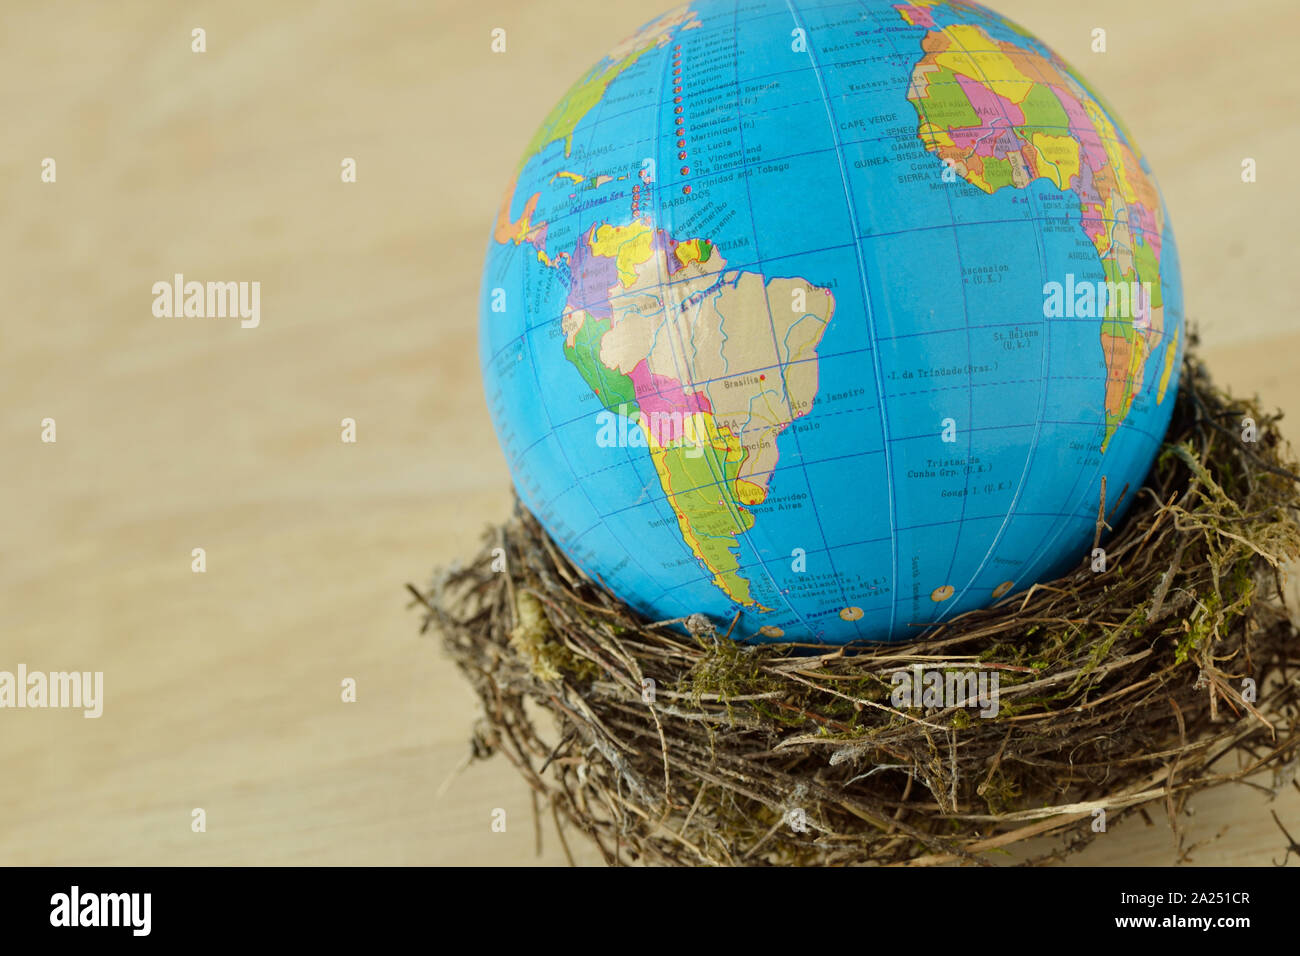 Planet Erde in ein Vogelnest auf weißem Hintergrund - Konzept von Umweltschutz und Planeten Schutz Stockfoto